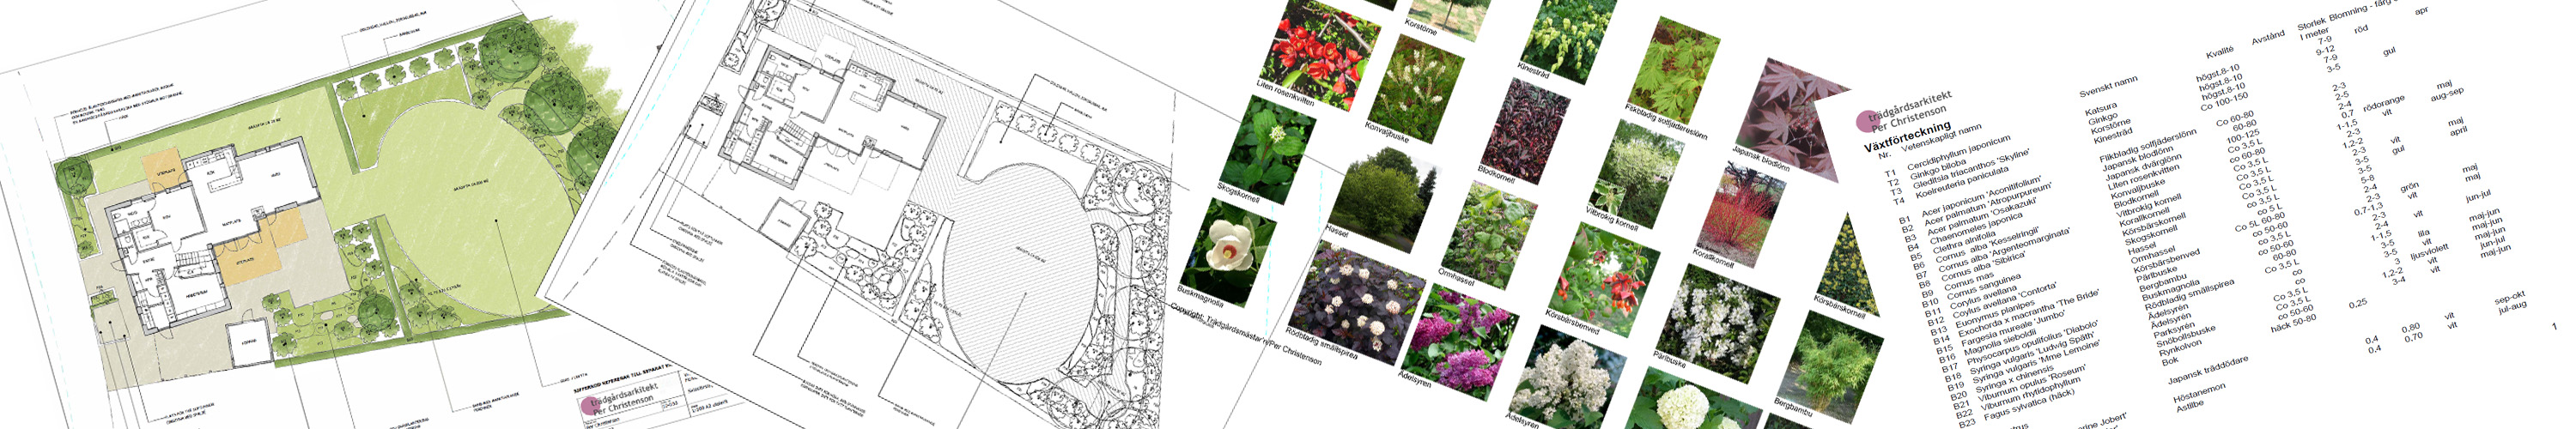 Trädgårdsdesign, skissförslag och arbetsritningar